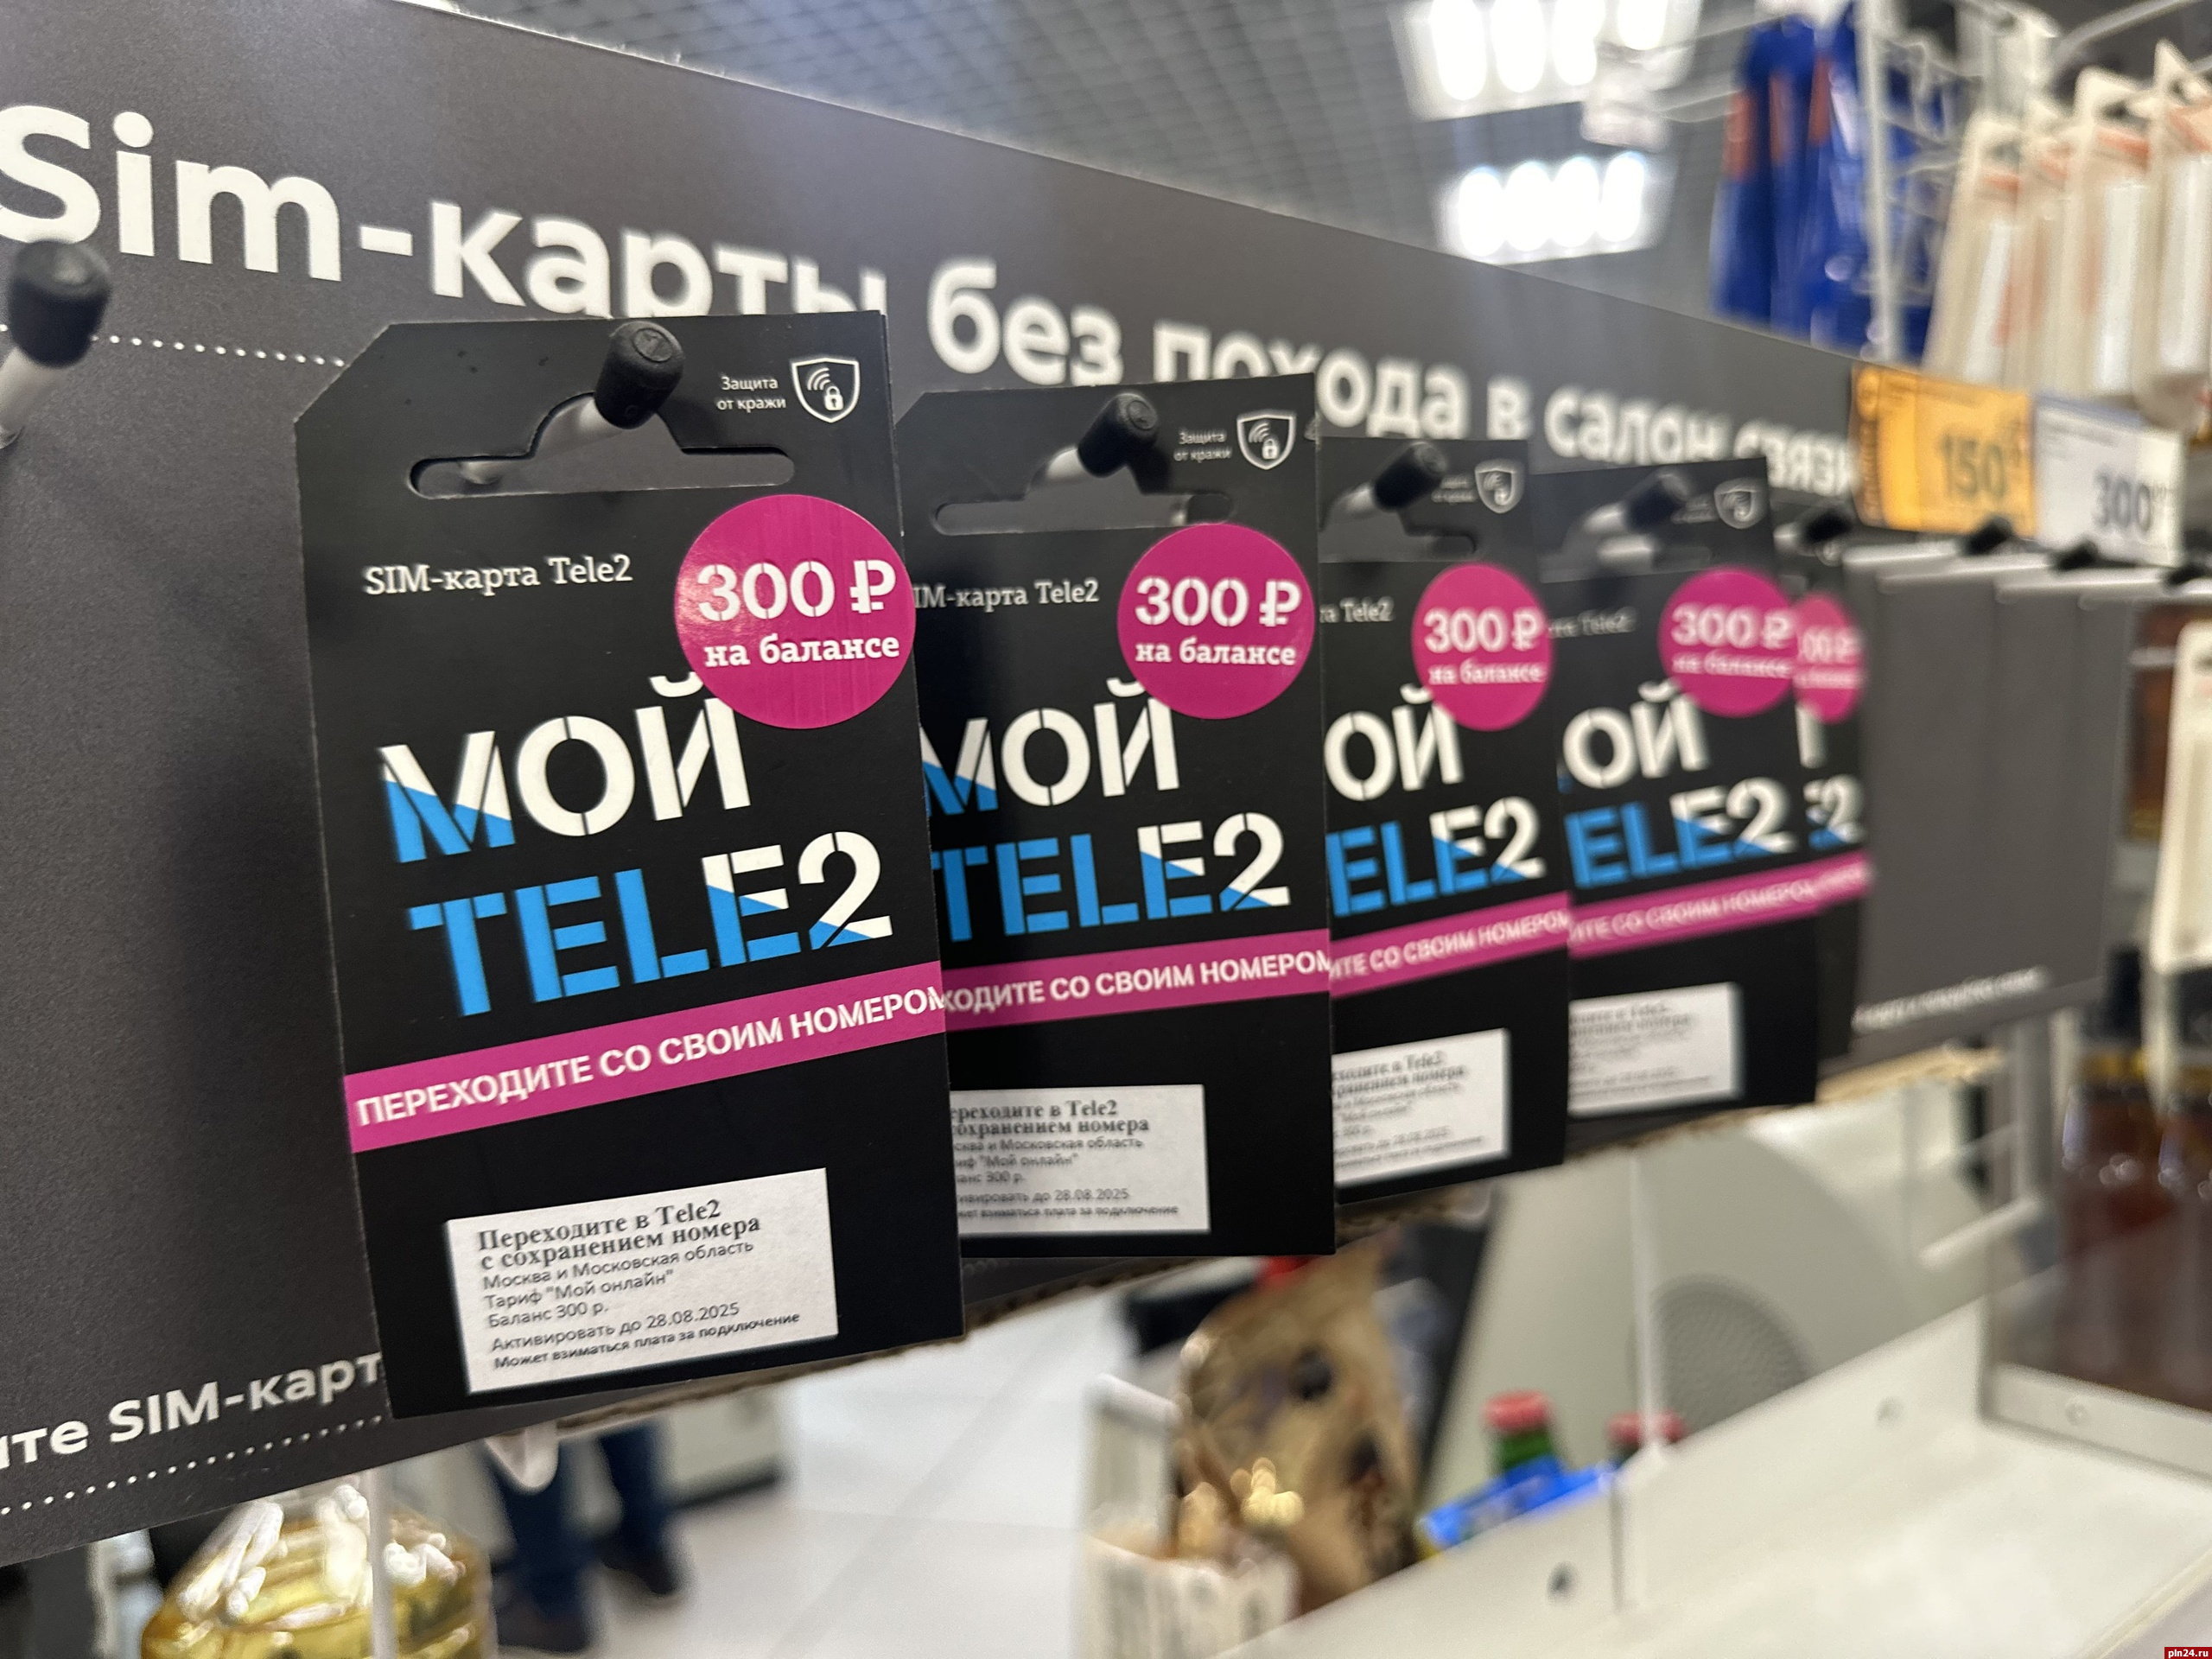 SIM Tele2 с саморегистрацией можно купить еще в четырех крупных сетях супермаркетов